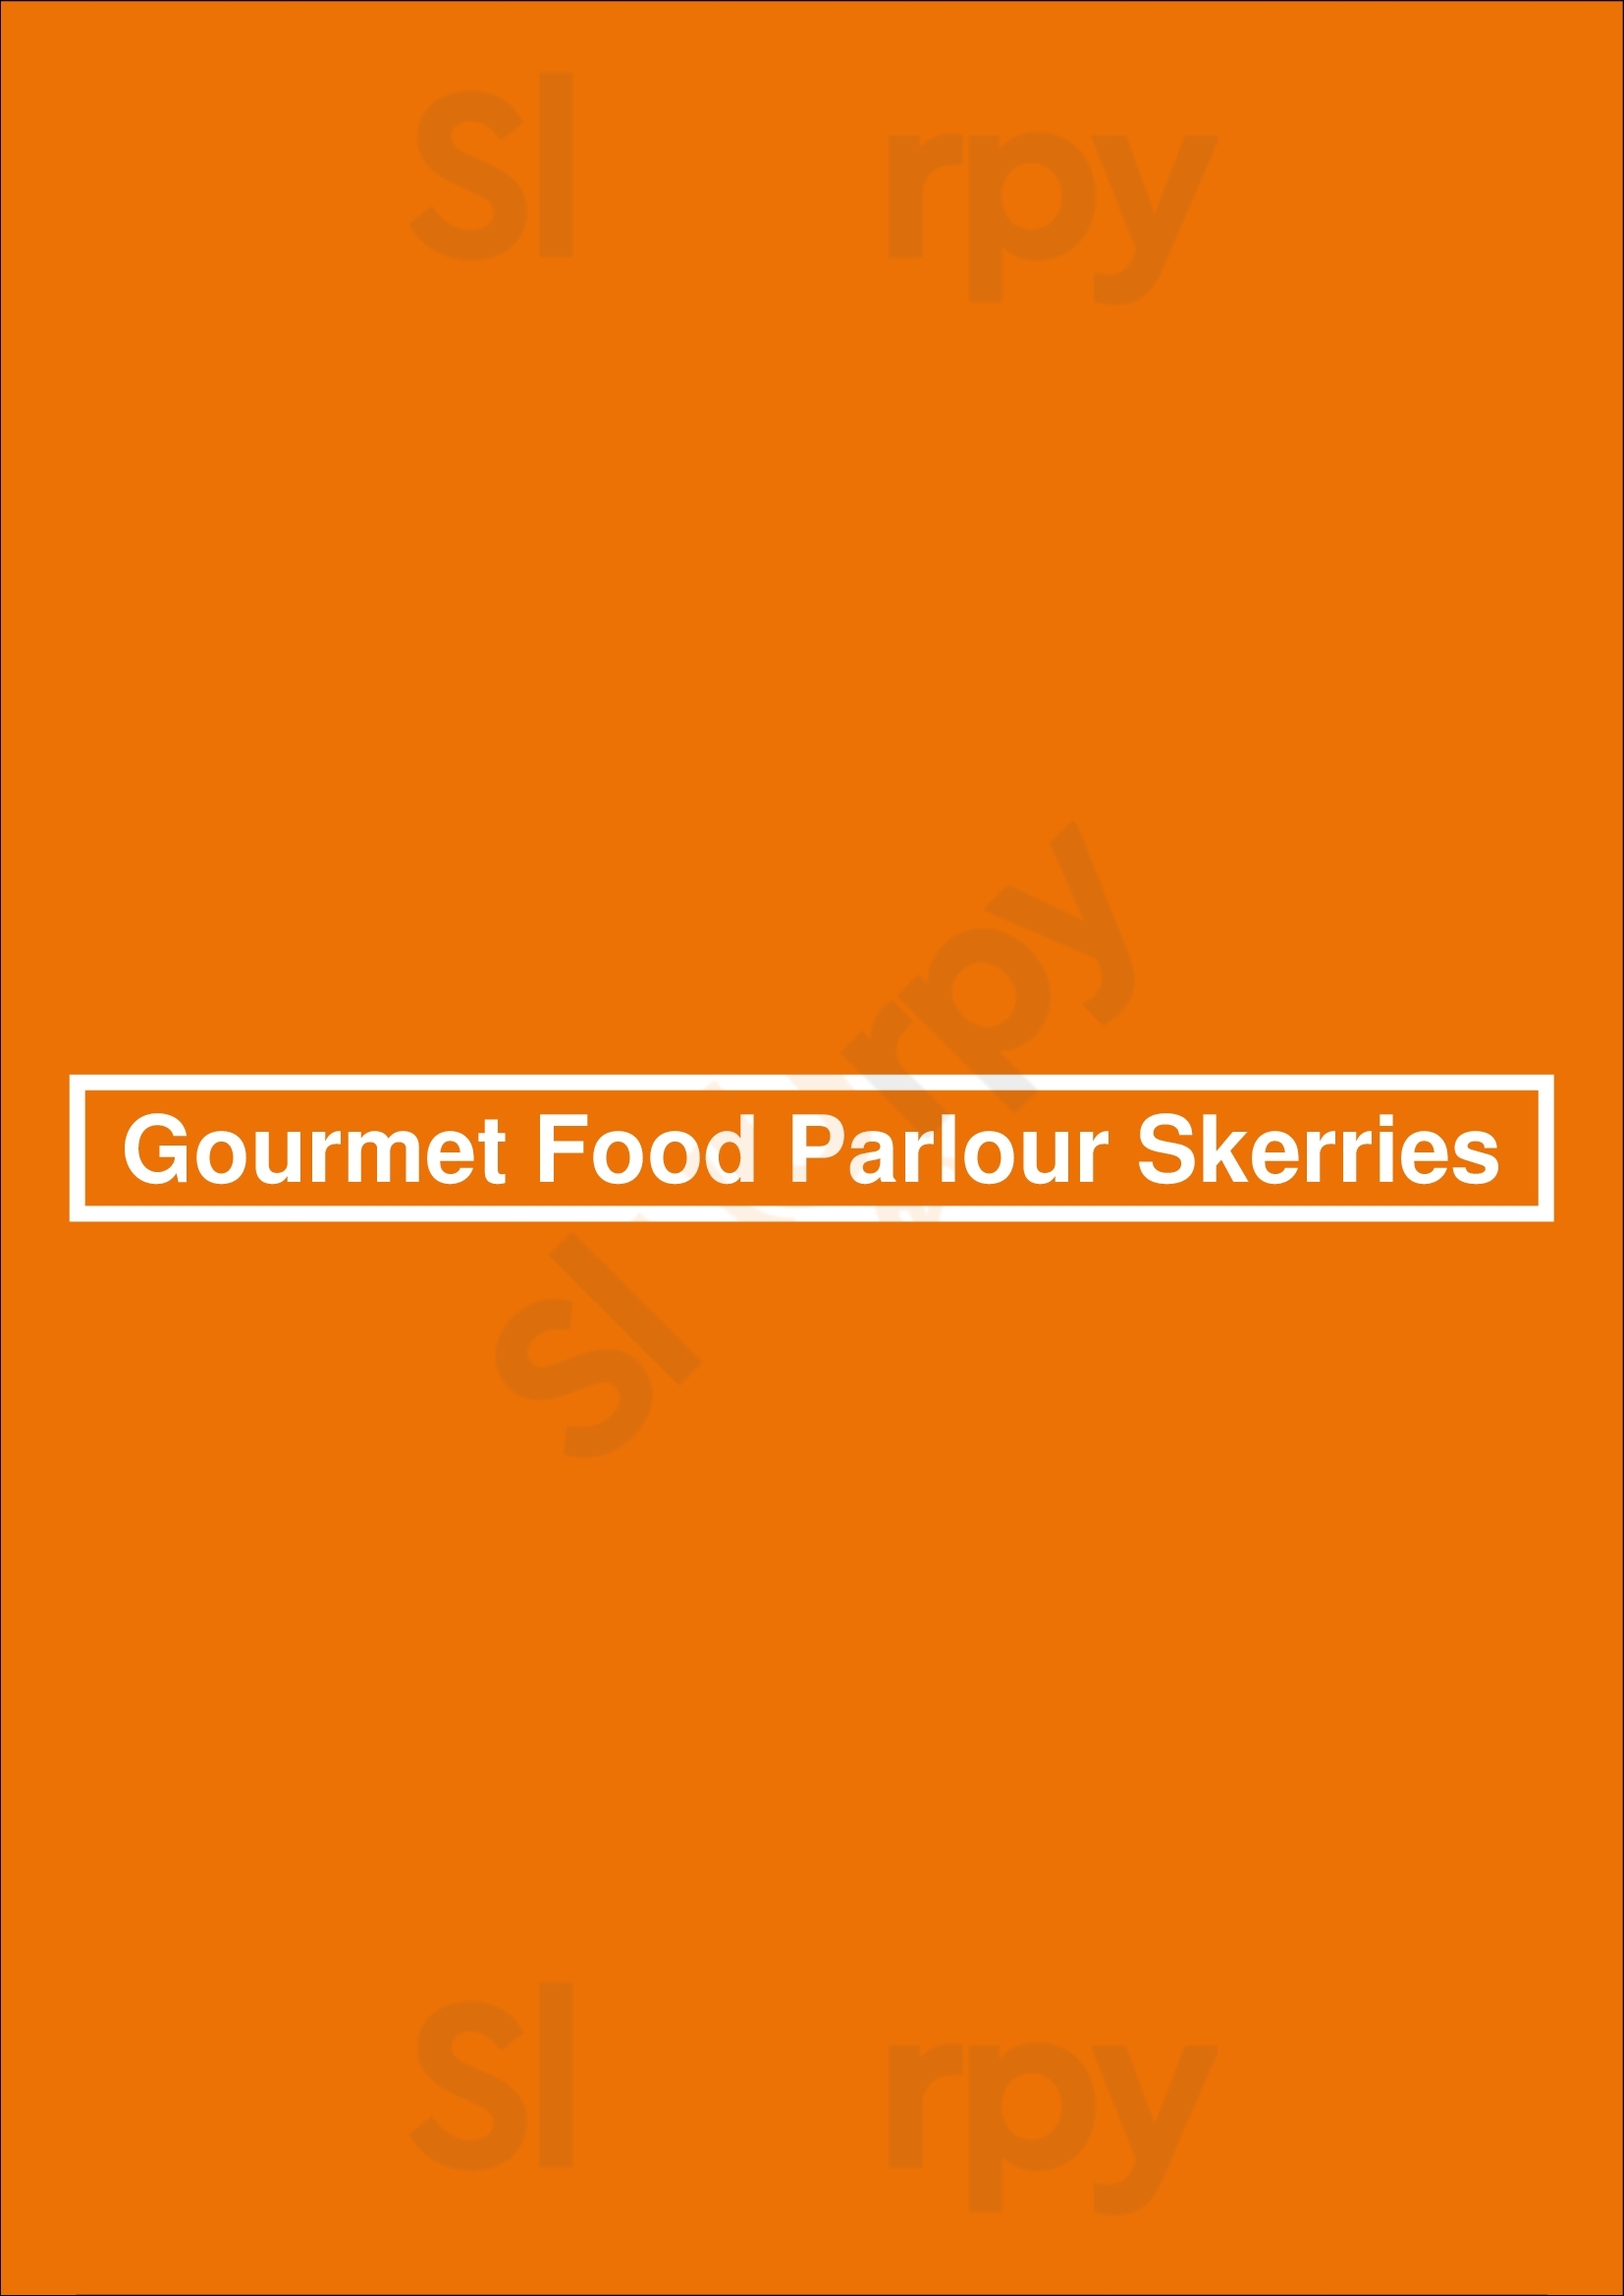 Gourmet Food Parlour Skerries Skerries Menu - 1